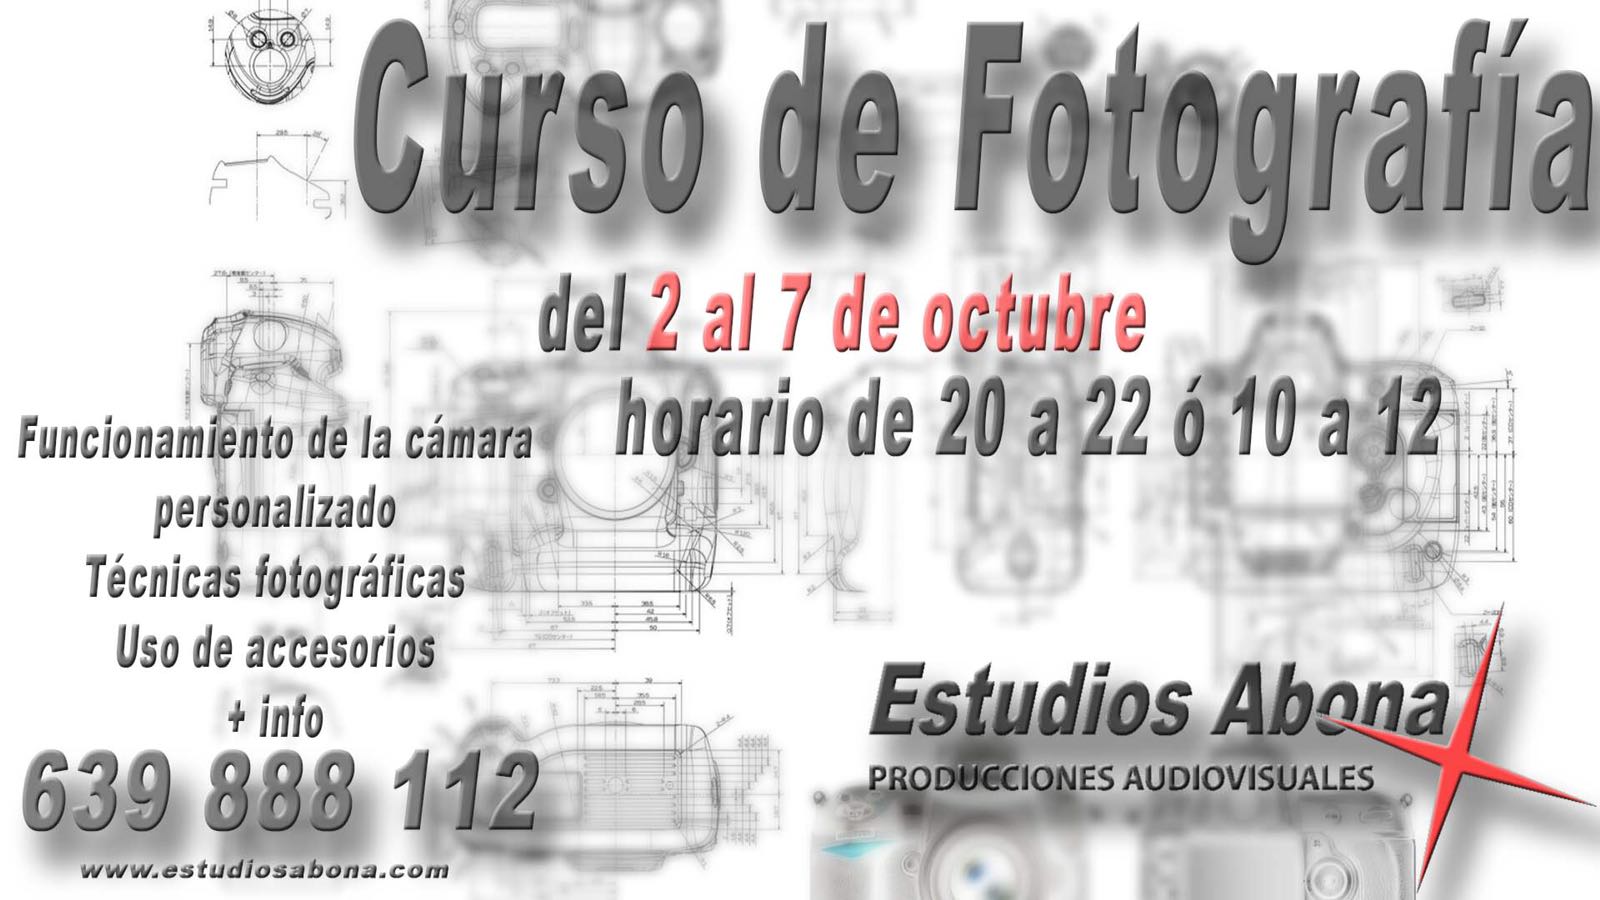 ‘Curso de Fotografía’ del 2 al 7 de octubre a cargo de Estudios Abona